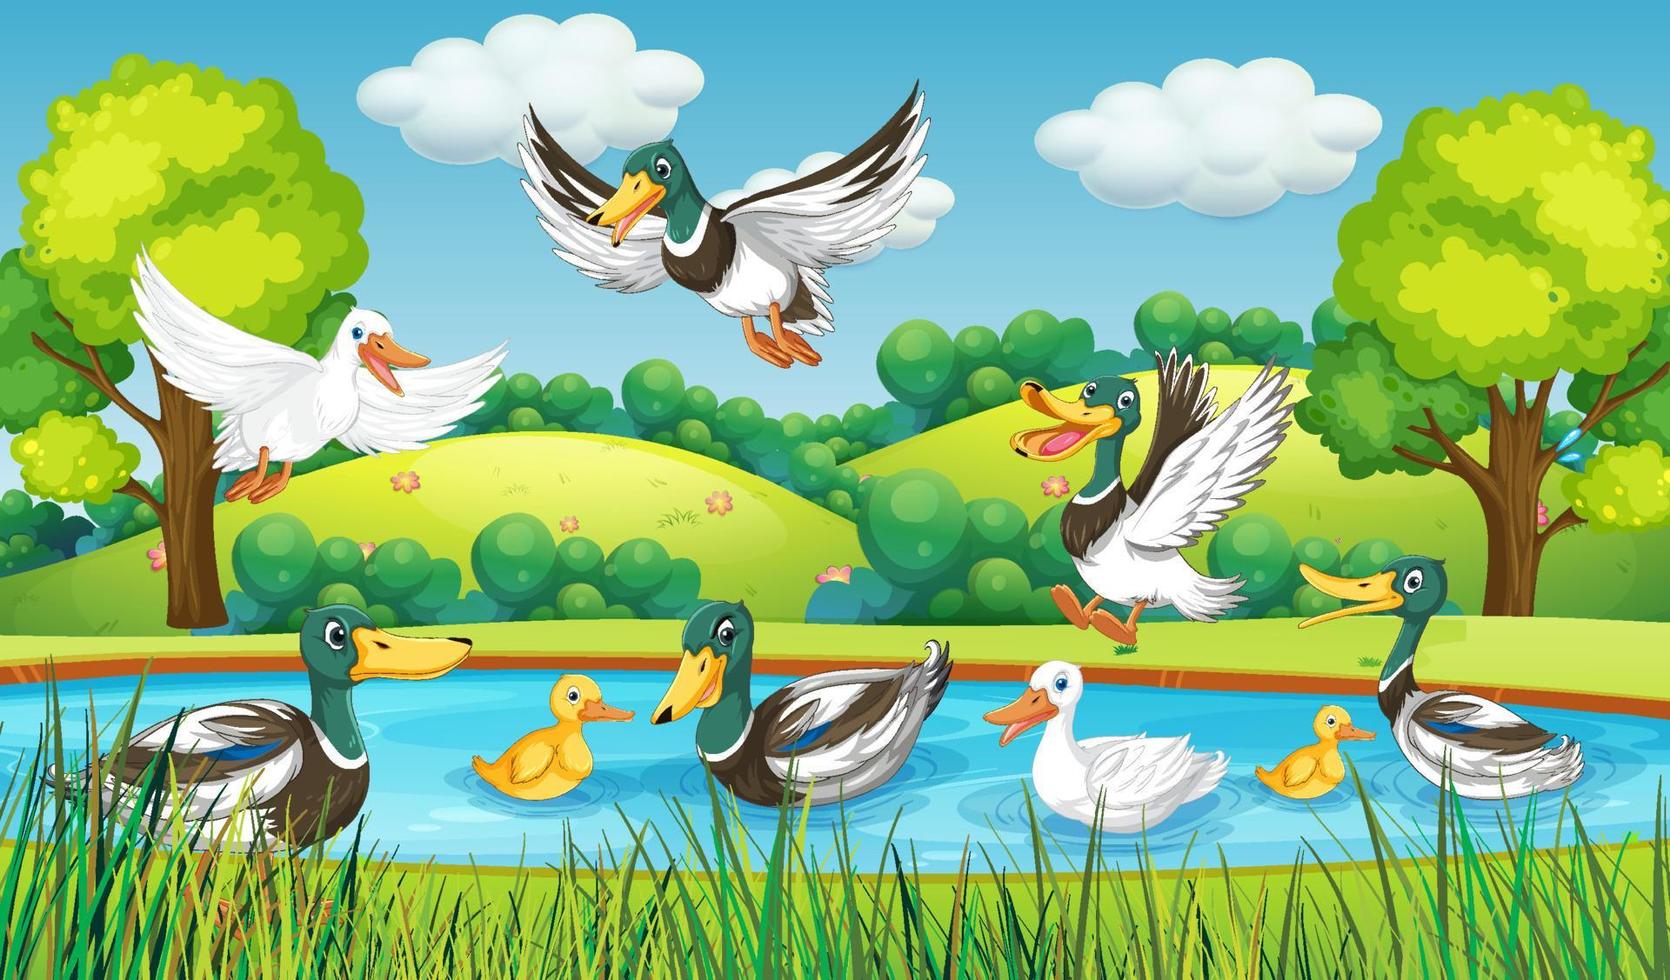 Outdoor scene with cartoon ducks vector